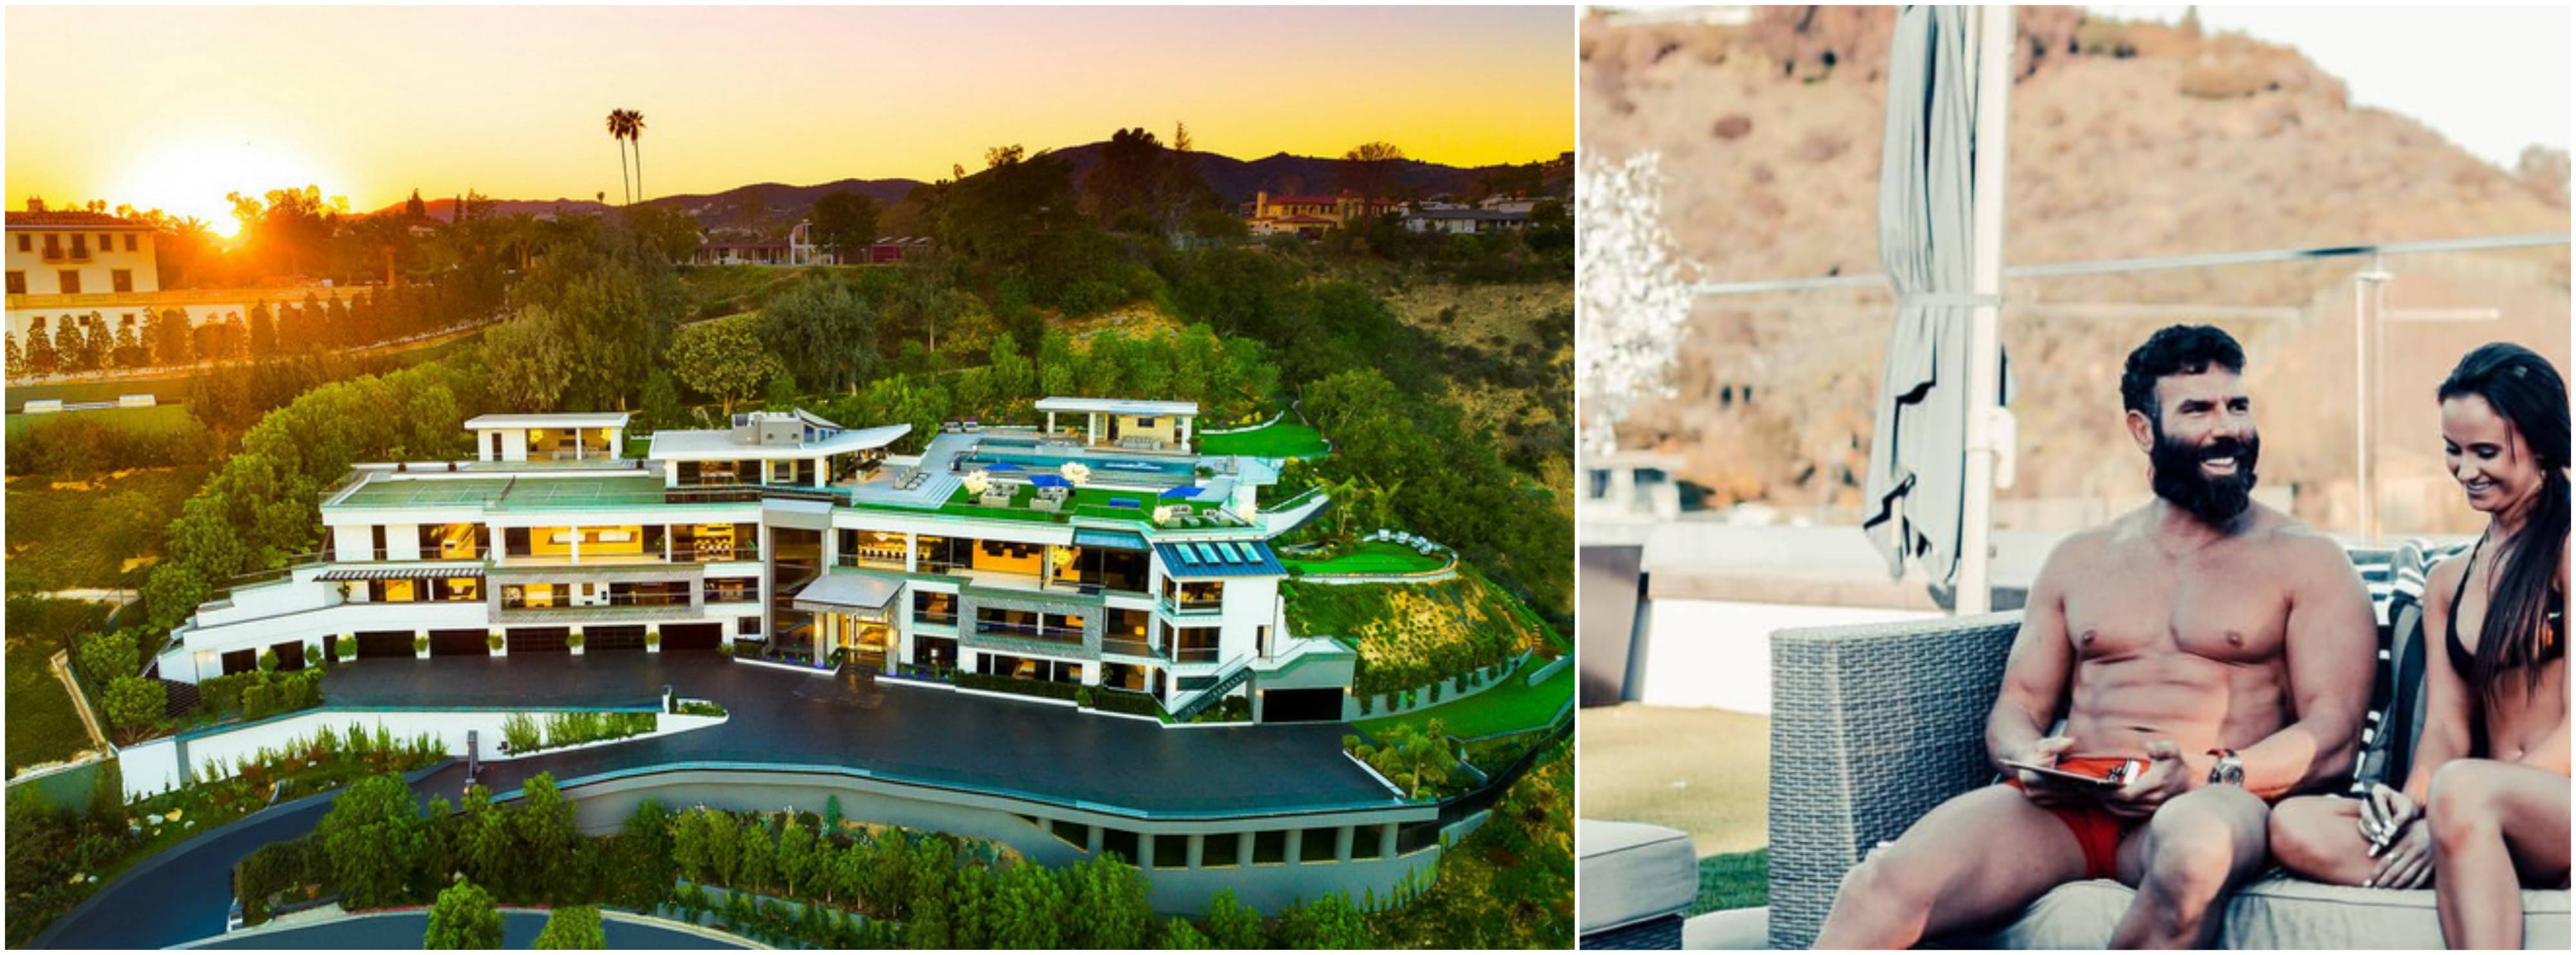 Dan Bilzerian ha una villa a Bel Air Los Angeles da 100 milioni